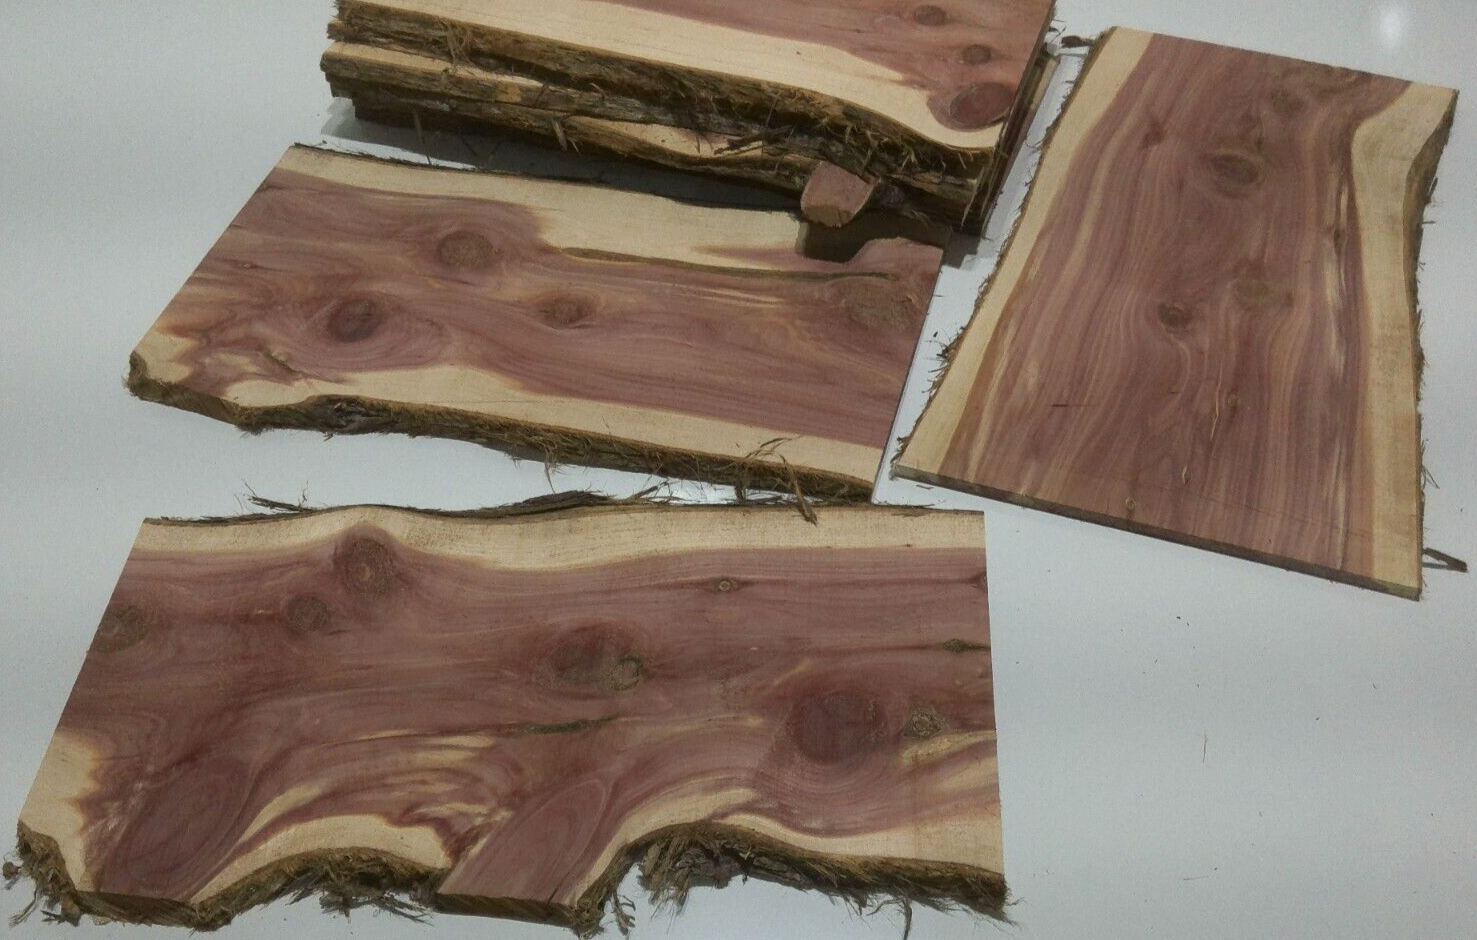 1 Milled Kiln Dried Eastern Red Cedar Lumber SLAB 24" X 8-12" X 1/2" RARE Our Wood Shop - фотография #2